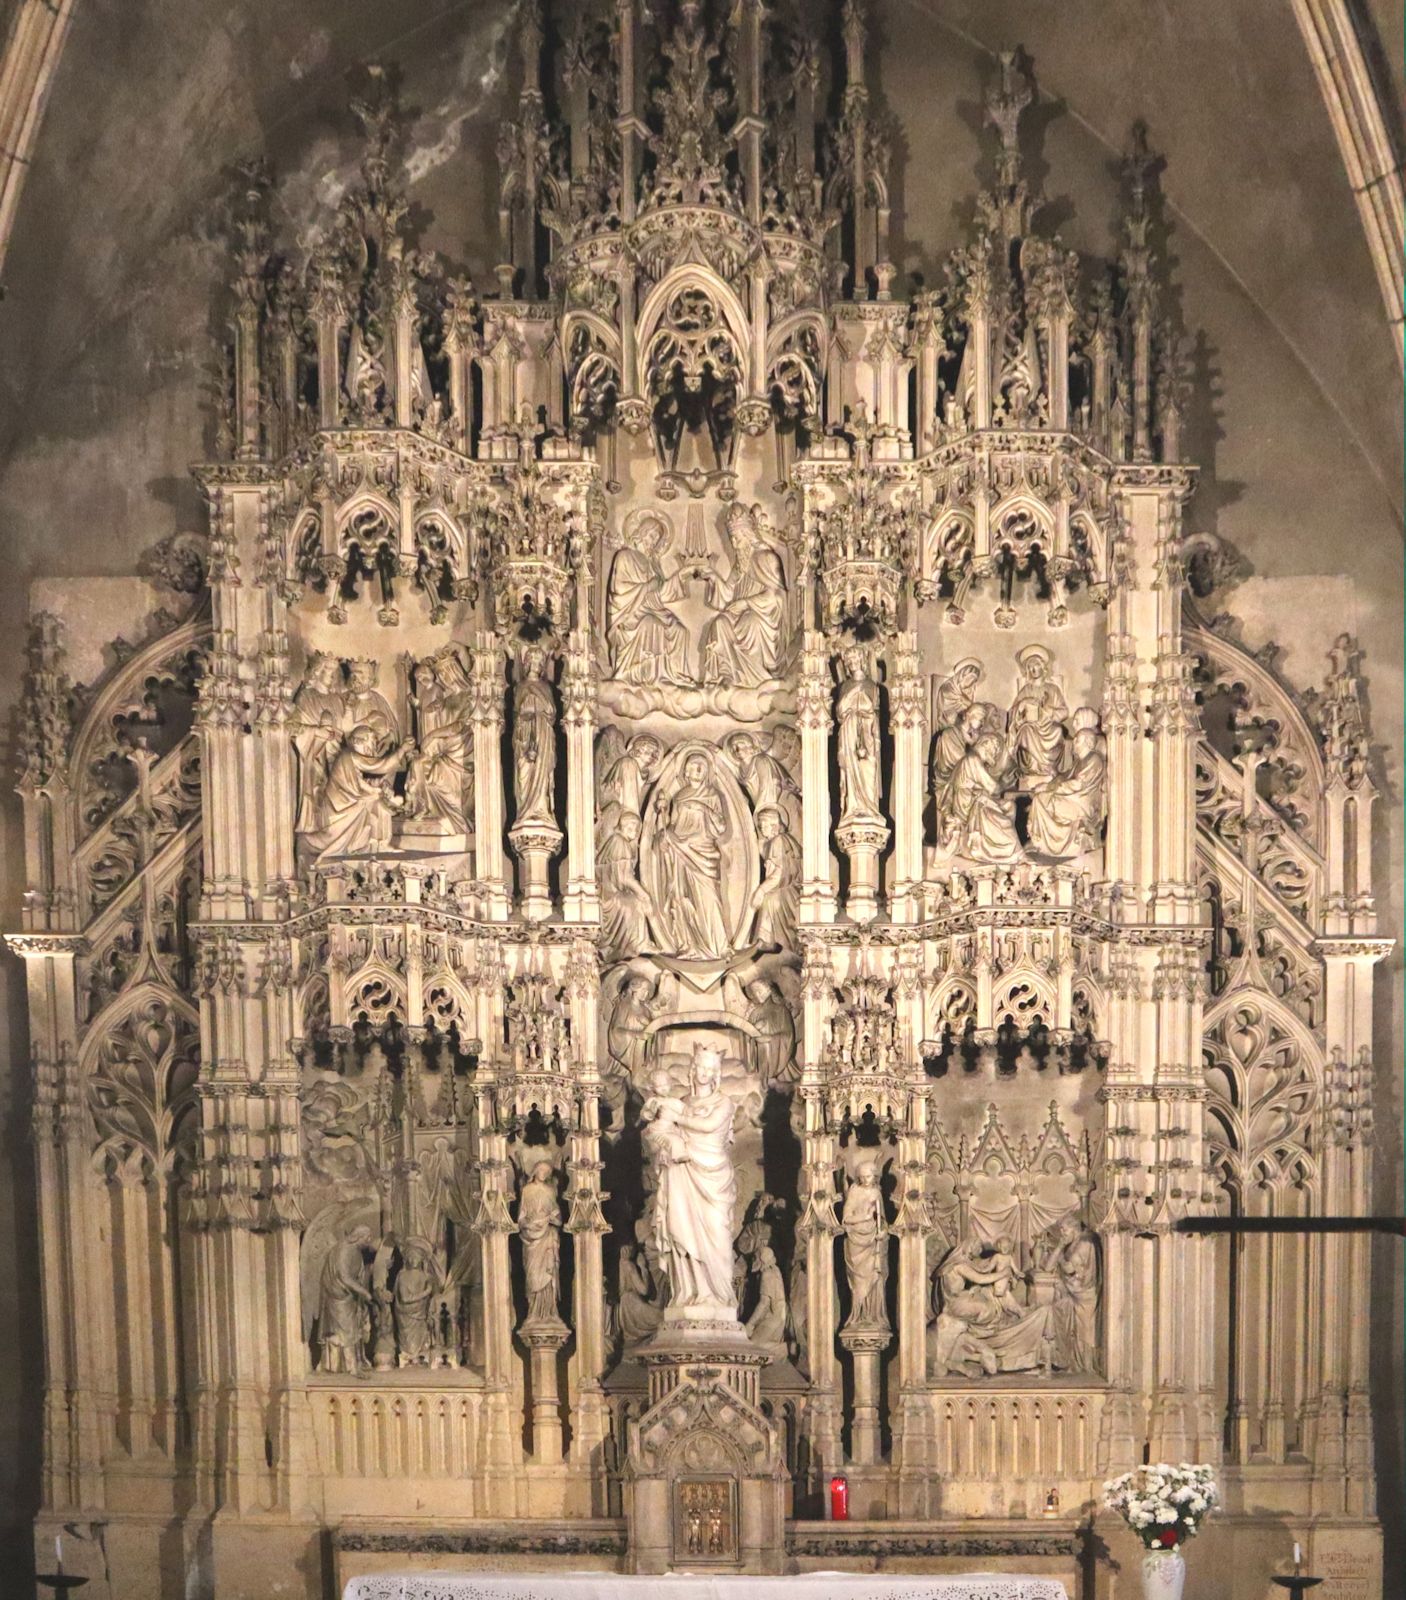 Benoîte und Jean-Pierre Robert: Altar, 1864, in der Kapelle der Kirche Saint-Bonaventure in Lyon, in der Bonaventura bestattet war